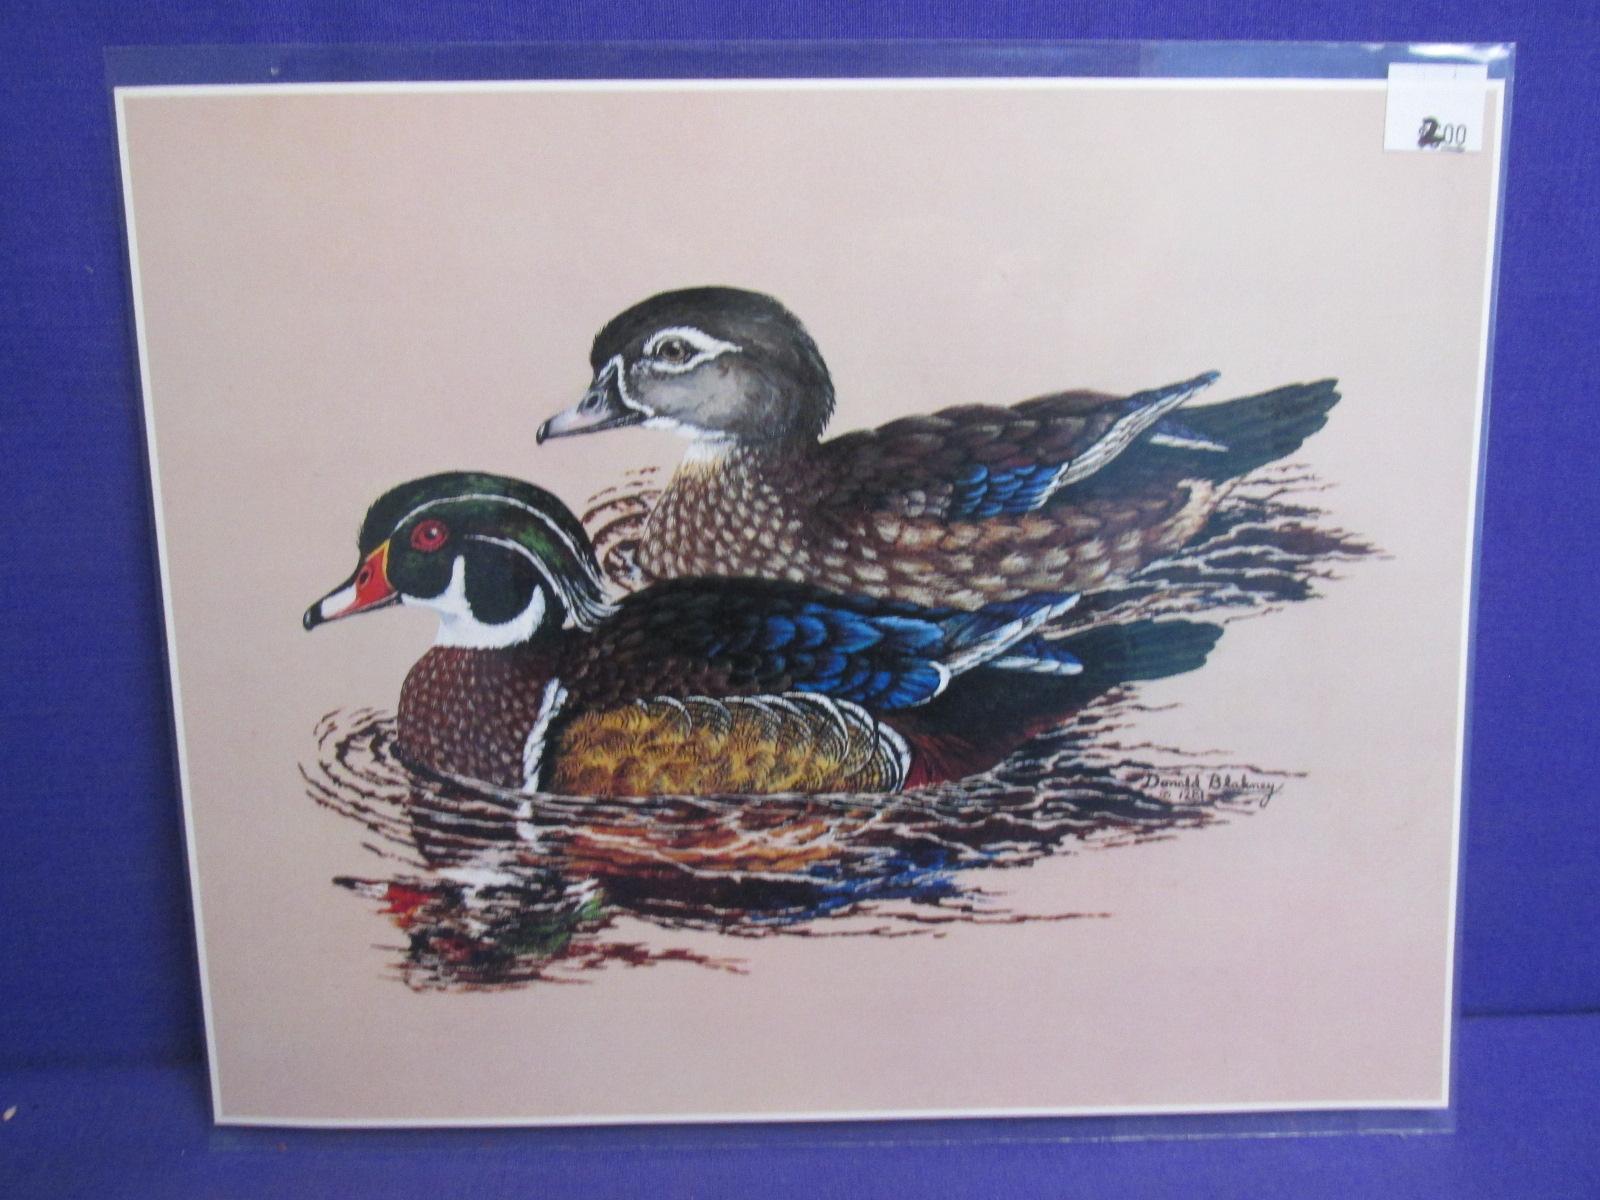 14 Wildlife Prints – 5 Les Kouba 7 1/2” x 10” , 5 Donald Blakney each 9x 12” & 4 8x10